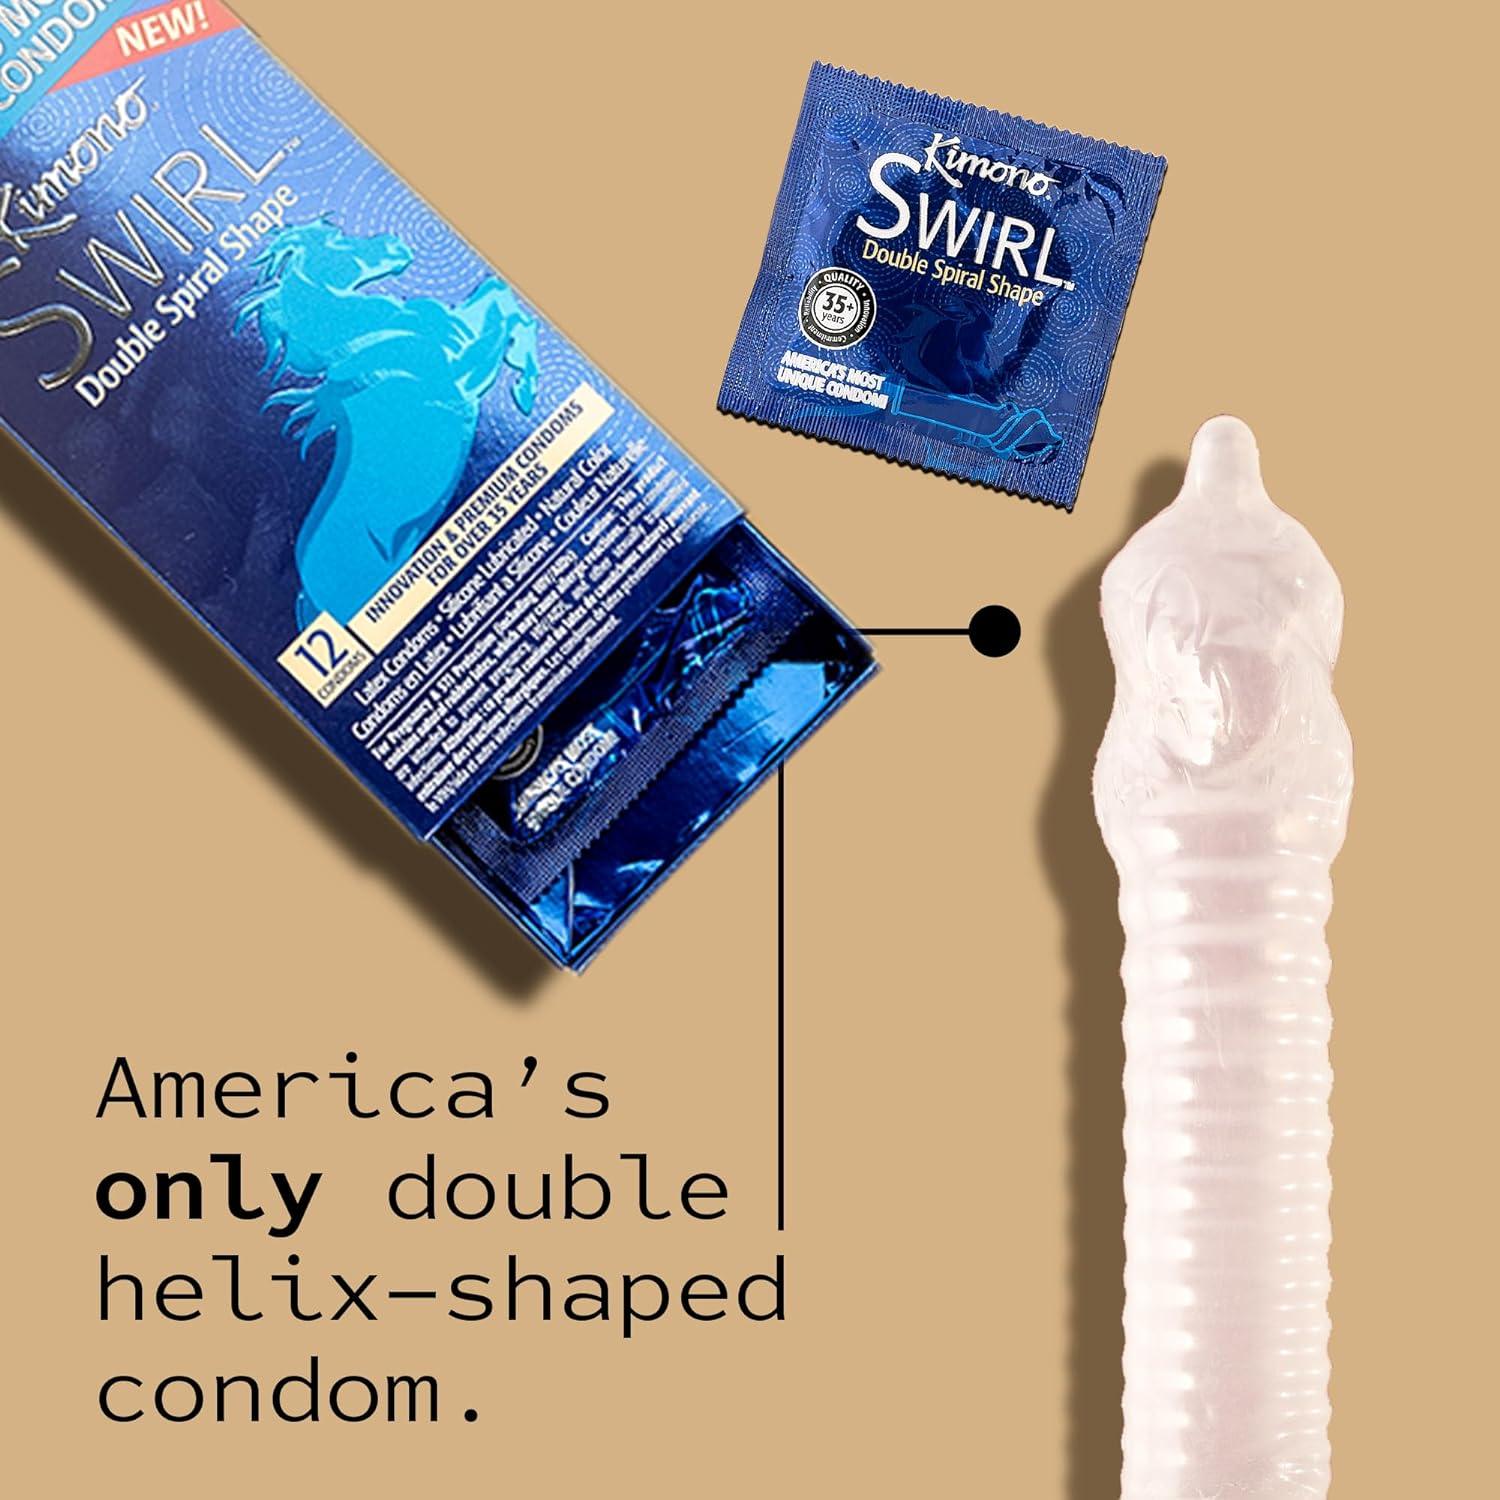 Kimono Swirl 12 Count Condoms - CheapLubes.com